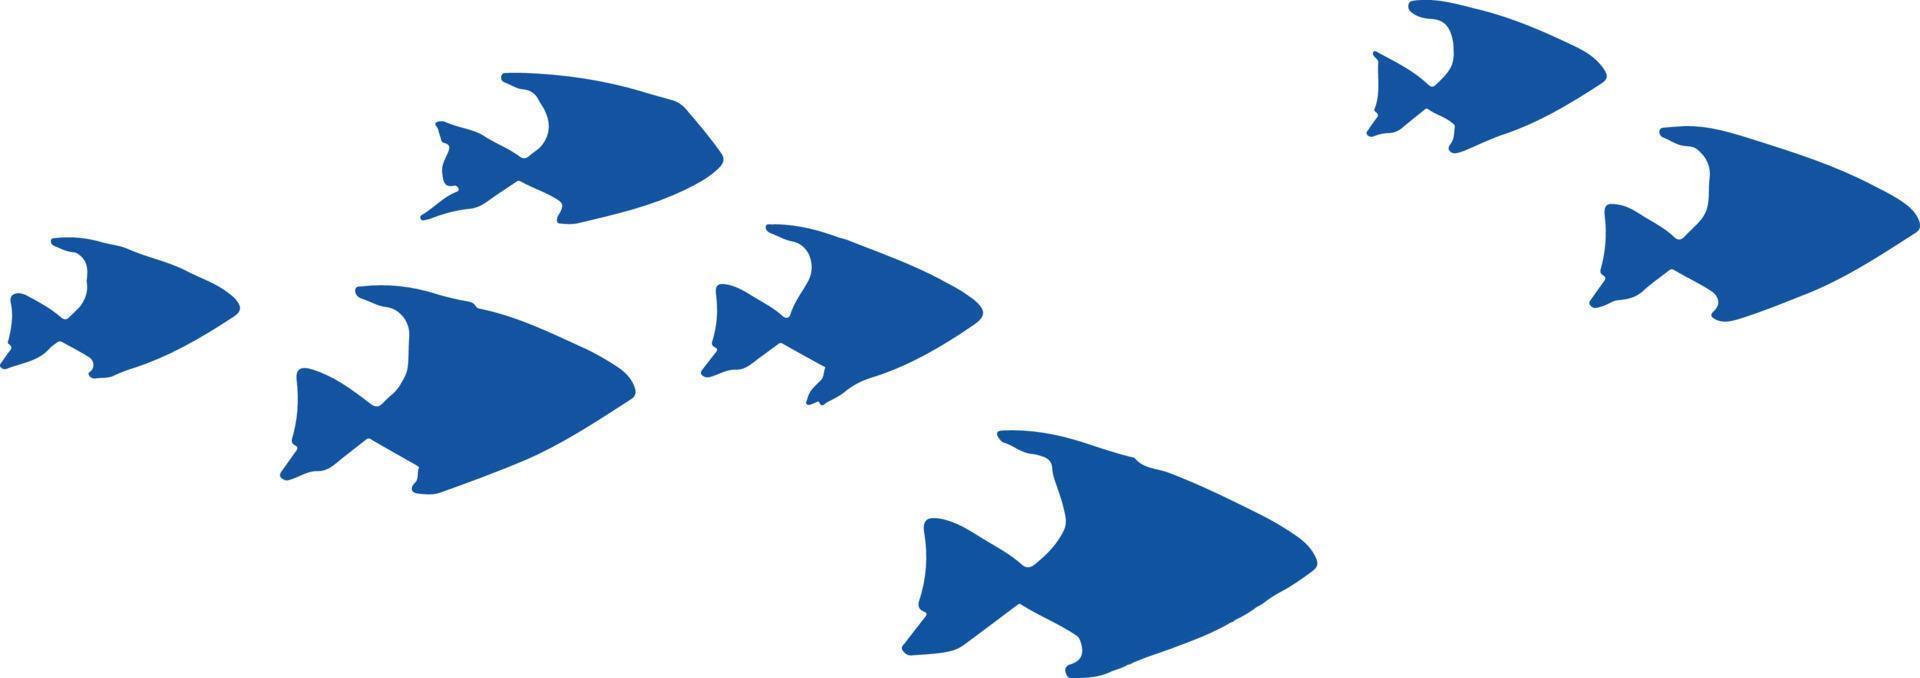 troupeau de petits poissons bleus dessinés vecteur